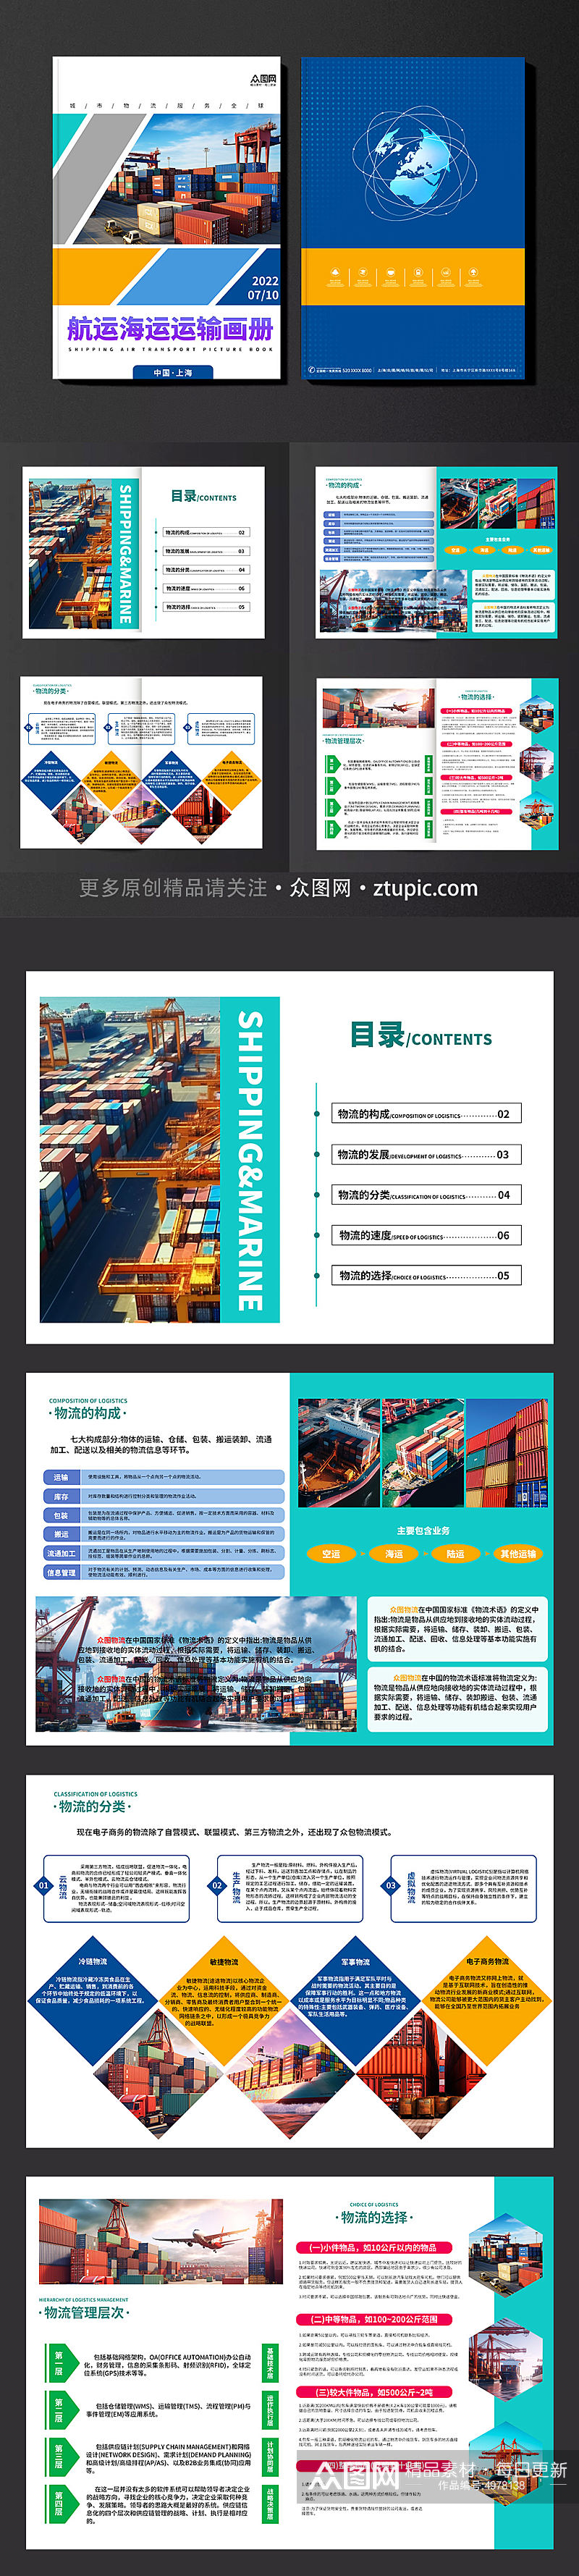 简约航运海运物流运输宣传画册素材